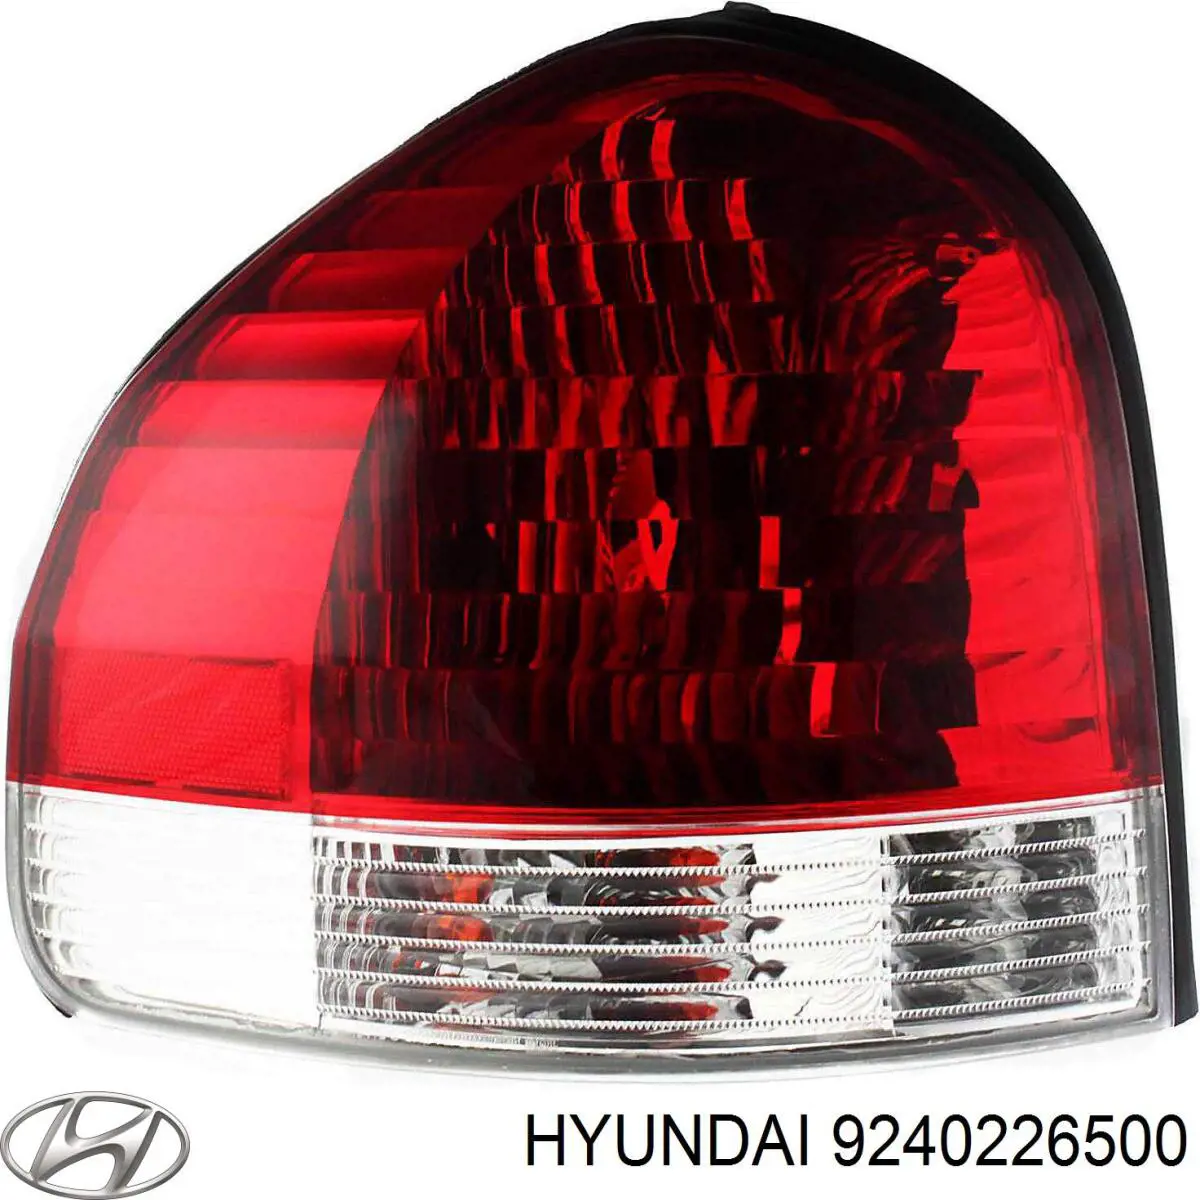 Lanterna traseira direita para Hyundai Santa Fe 